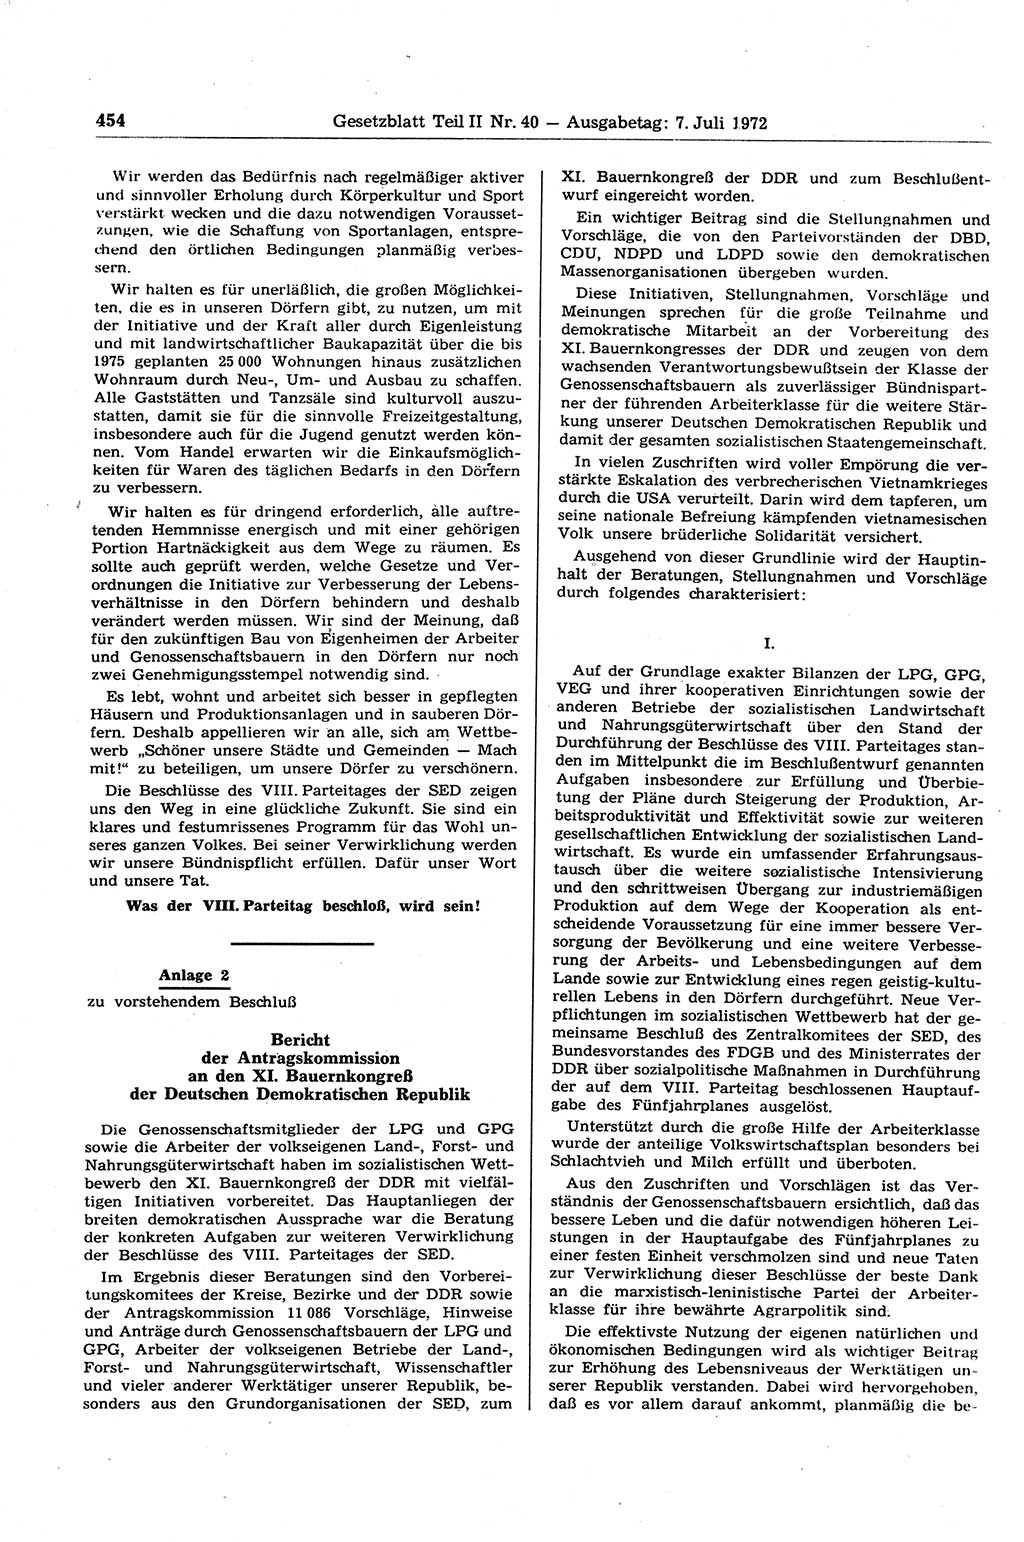 Gesetzblatt (GBl.) der Deutschen Demokratischen Republik (DDR) Teil ⅠⅠ 1972, Seite 454 (GBl. DDR ⅠⅠ 1972, S. 454)